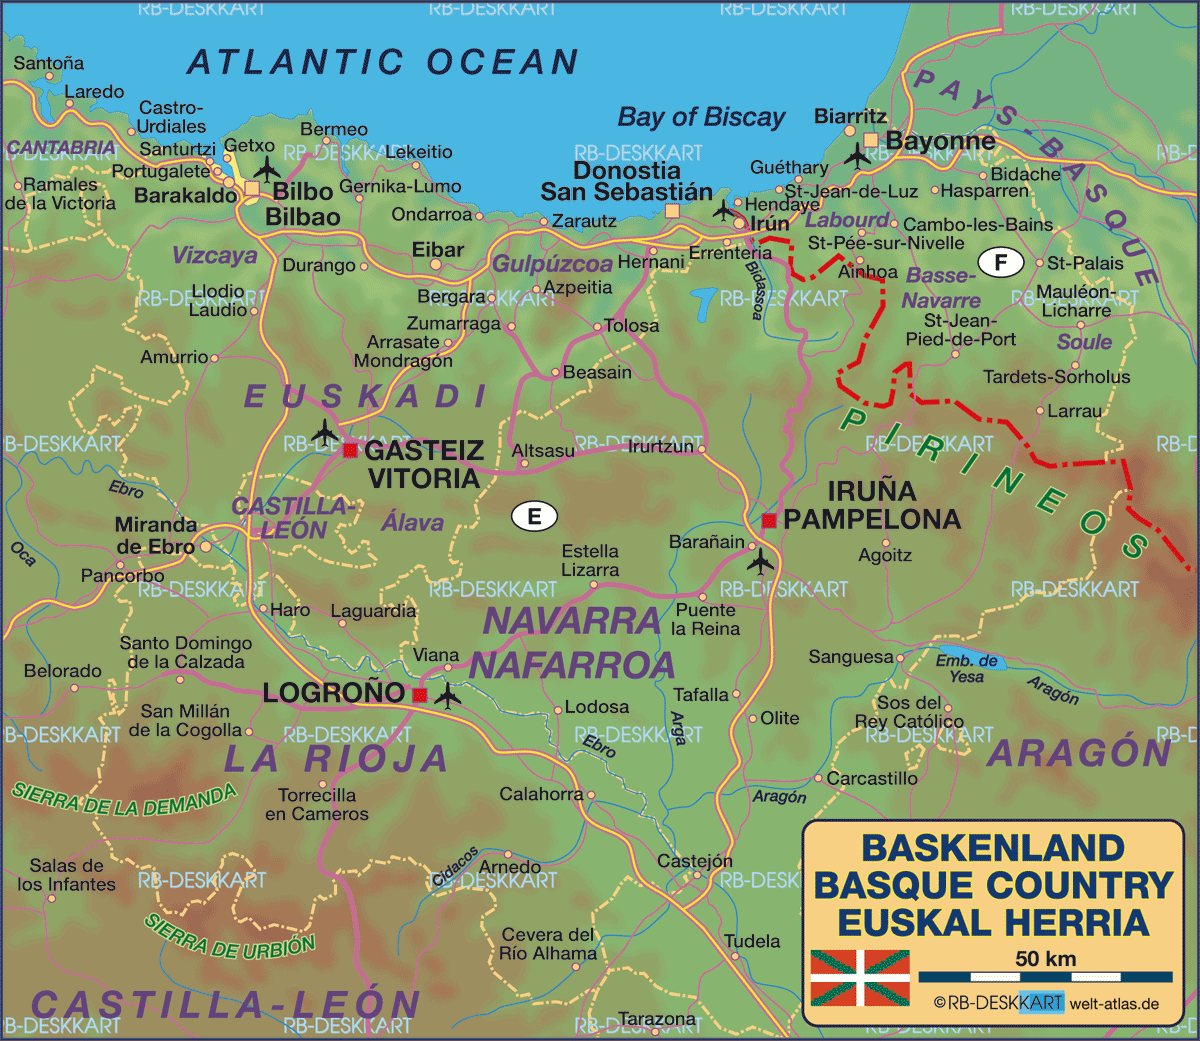 Karte von Baskenland / Euskal Herria (Region in Spanien, Frankreich)